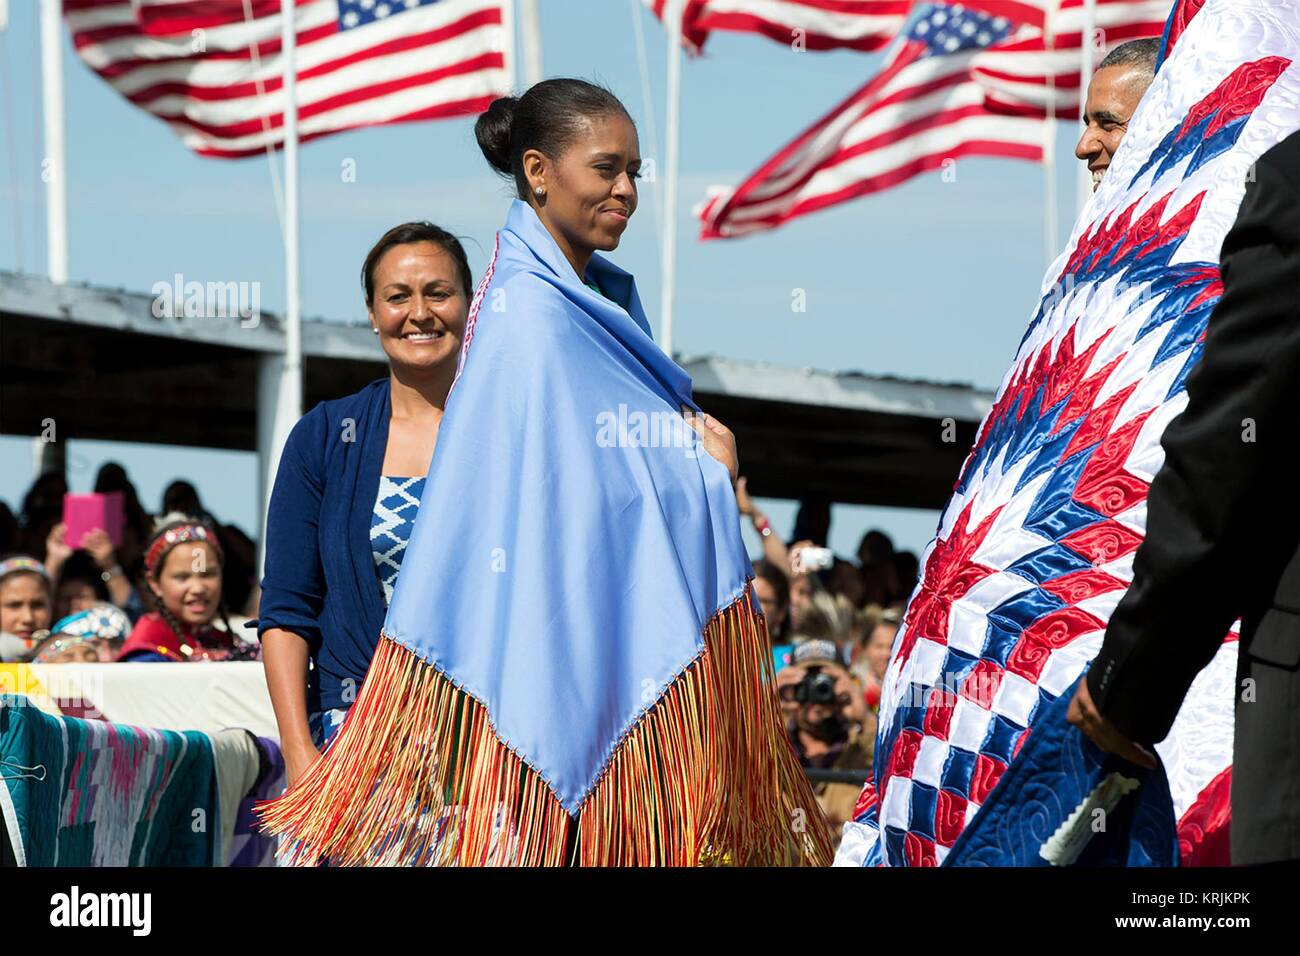 First Lady der USA Michelle Obama trägt einen Schal zu ihr präsentiert von Native American Tribe Vorsitzender Dave Archambault II während die Kanonenkugel Flag Tag Feier an der Standing Rock Sioux Tribe Reservierung Cannon Ball Powwow Gründen Juni 13, 2014 in Cannon Ball, North Dakota. Stockfoto